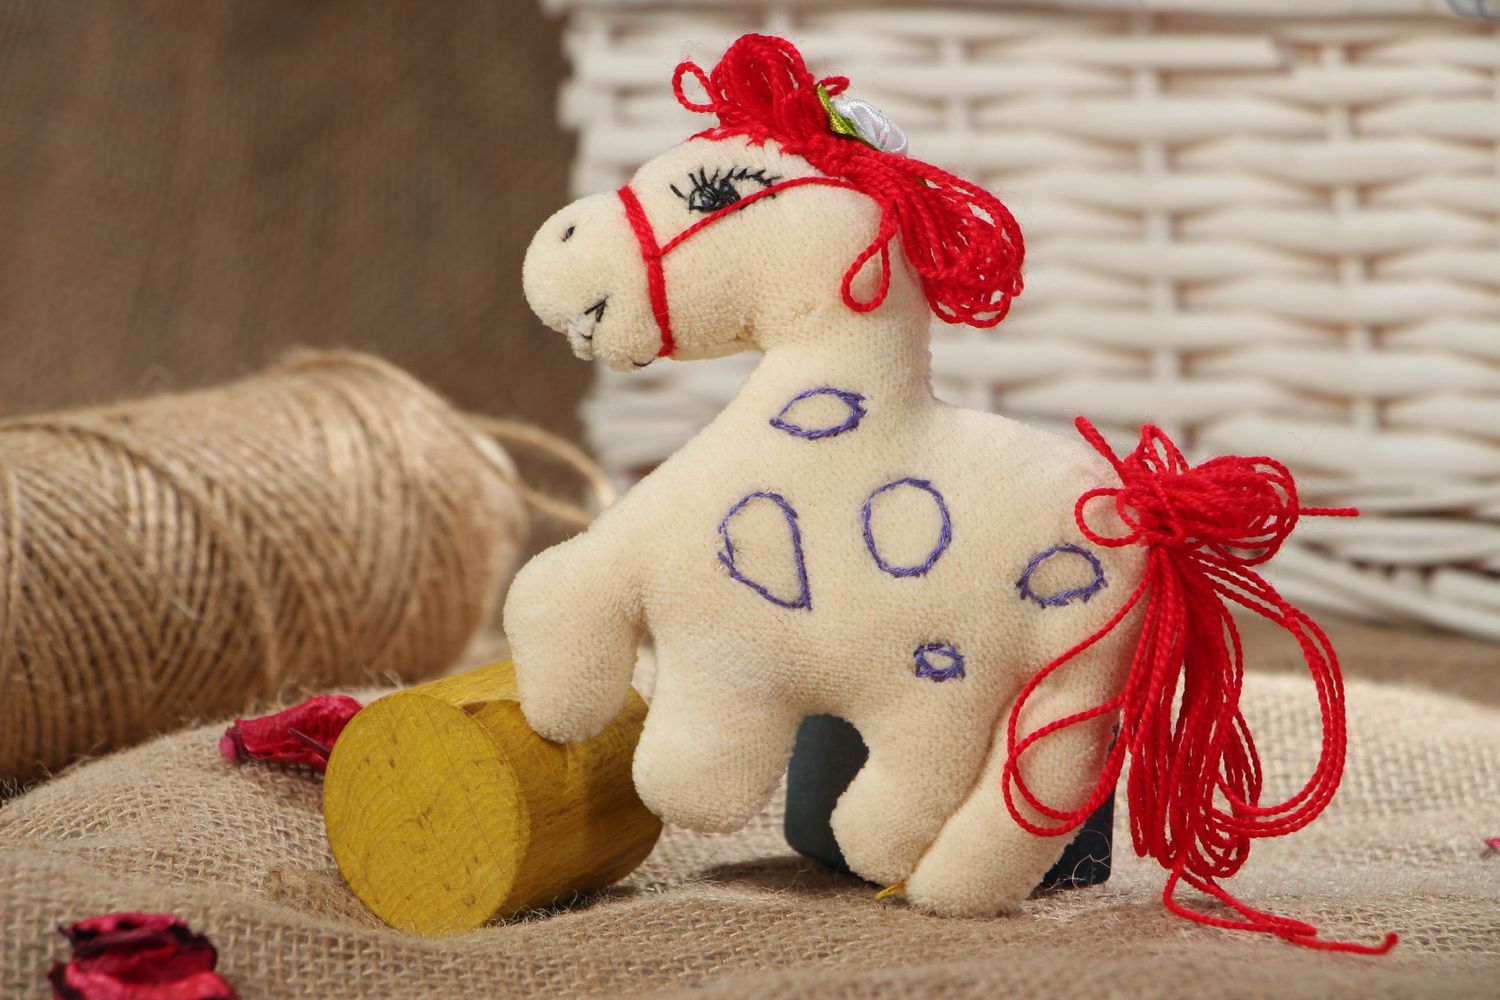 Textil Spielzeug von Handarbeit Pferd foto 5